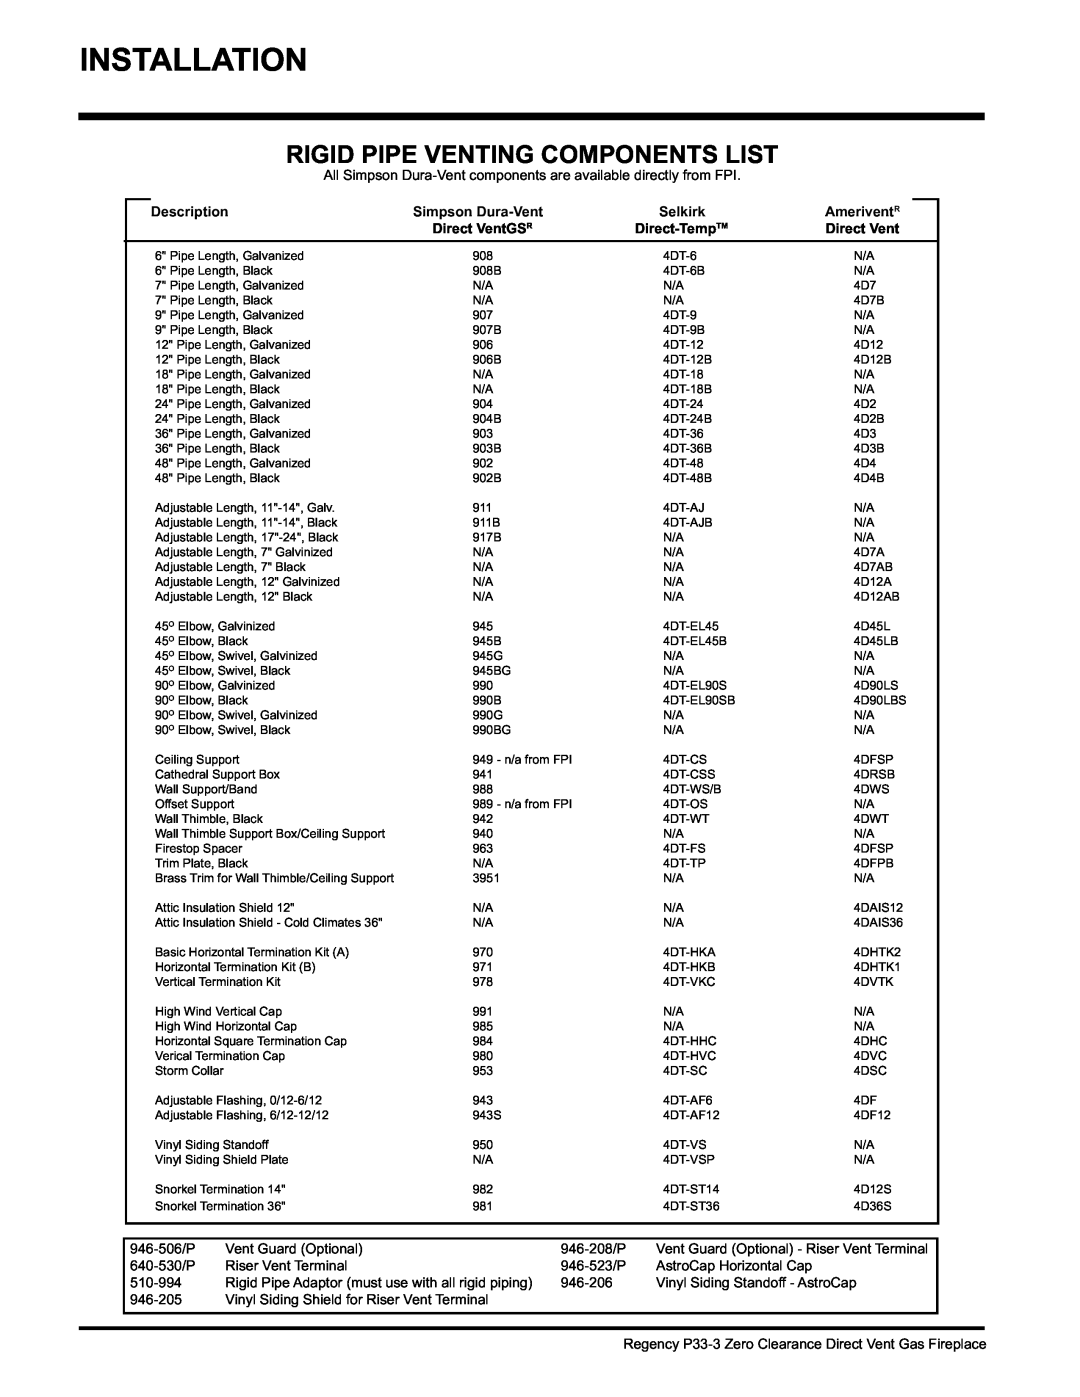 Regency P33-LP3 Rigid Pipe Venting Components List, Description, Simpson Dura-Vent, Selkirk, Direct VentGSR, Direct-TempTM 